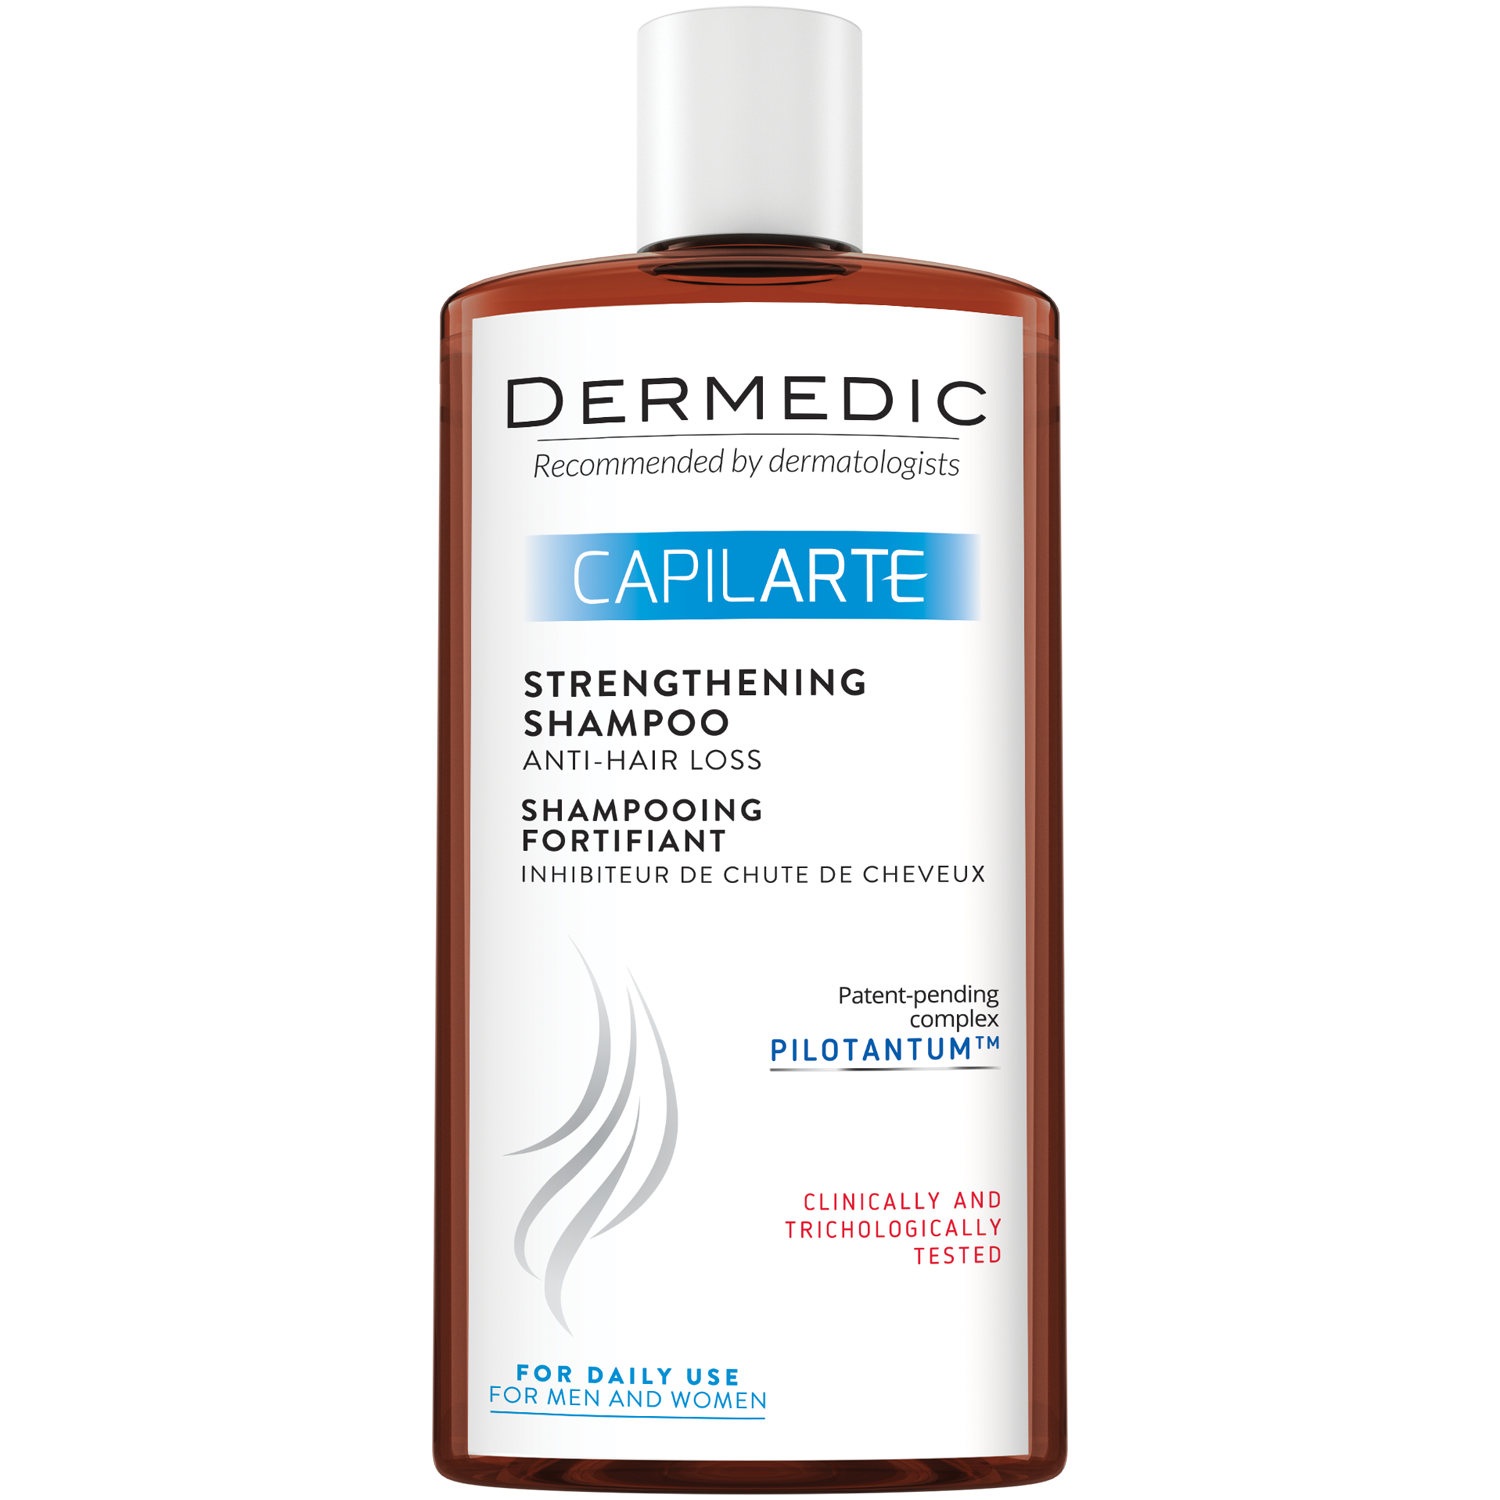 Dermedic Capilarte укрепляющий шампунь, препятствующий выпадению волос, 300 мл dermedic capilarte шампунь стимулирующий рост волос 300 мл